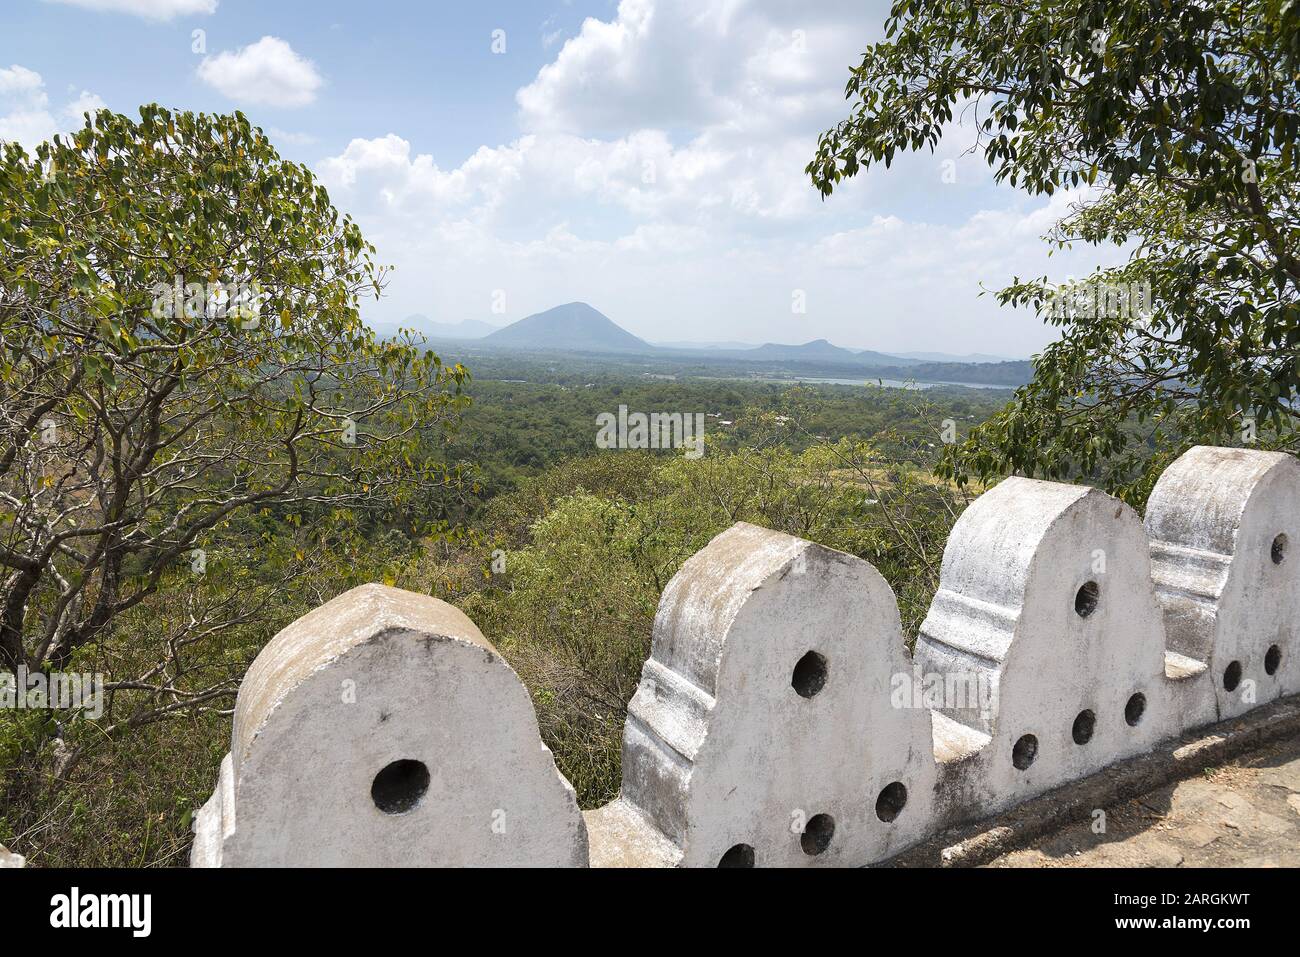 Dambulla, Sri Lanka: View from near the Dambulla Cave complex UNESCO heritage site. Stock Photo